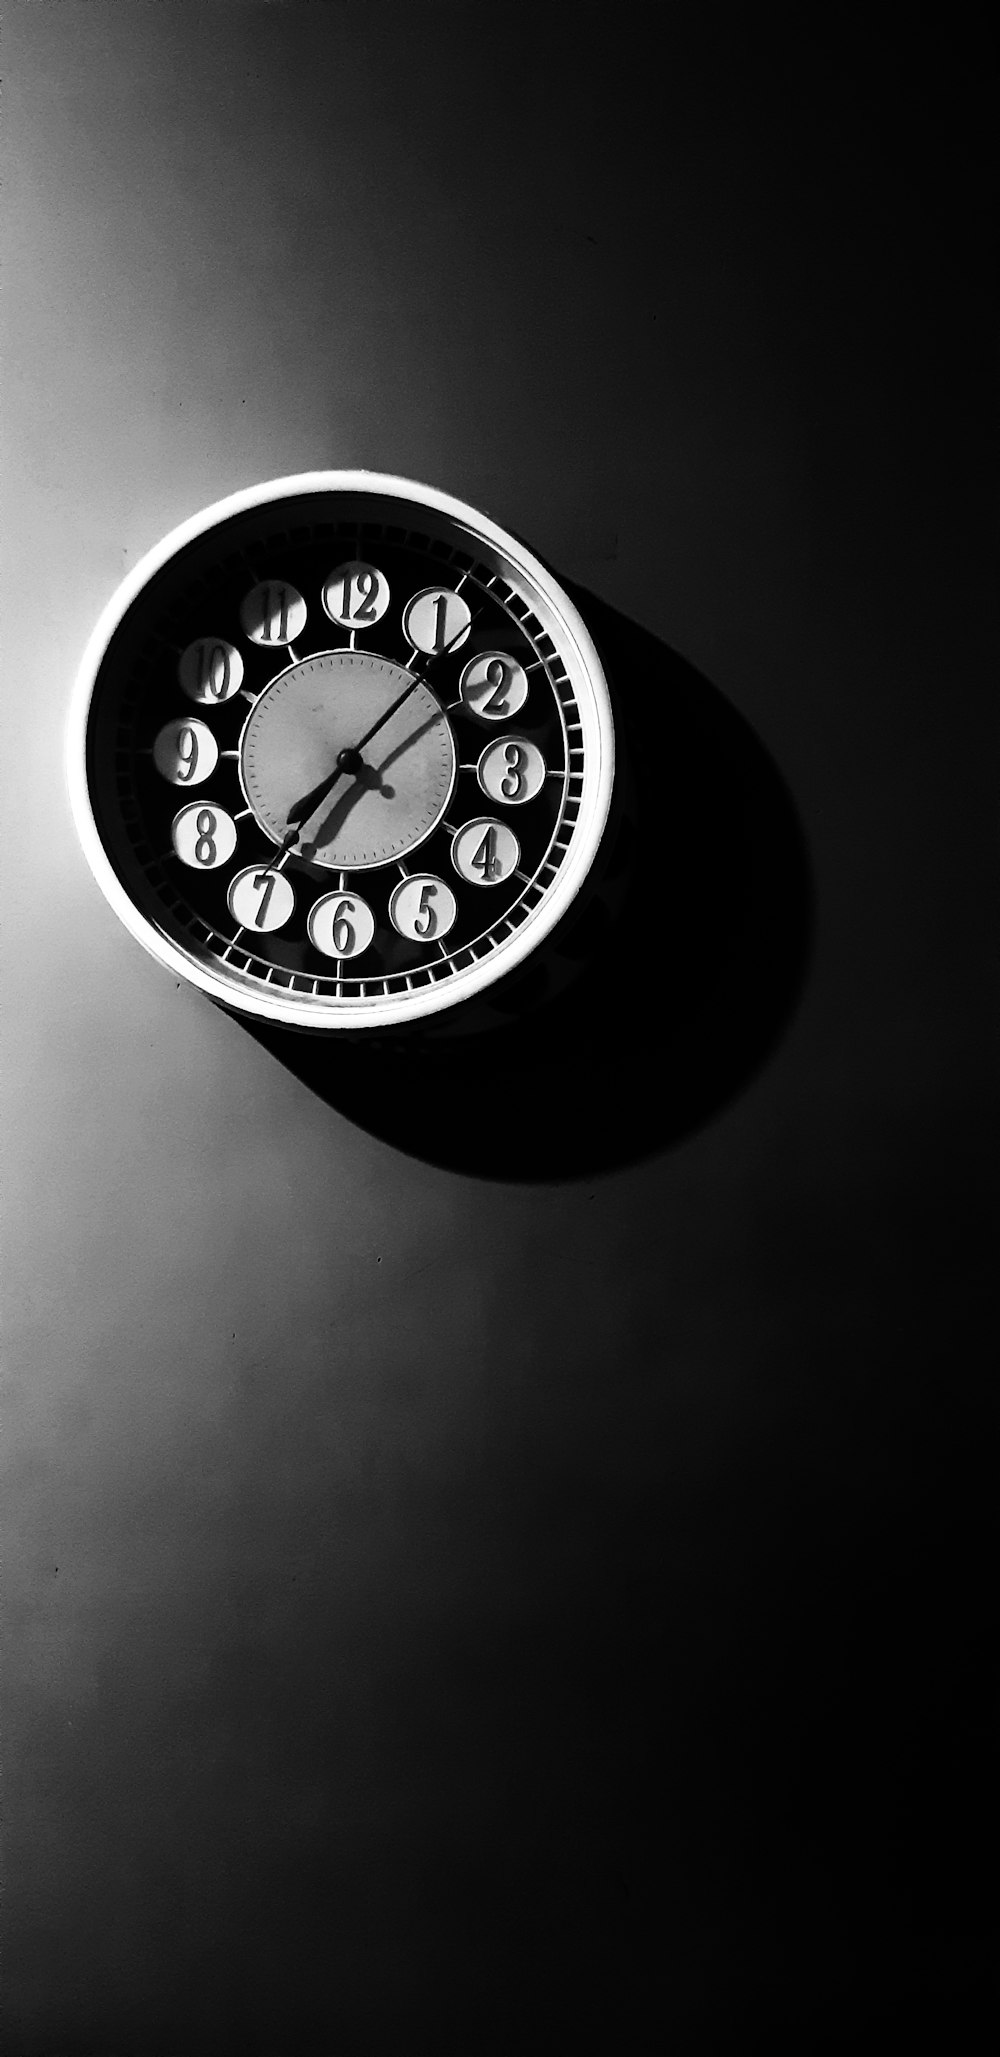 round black and white analog wall clock